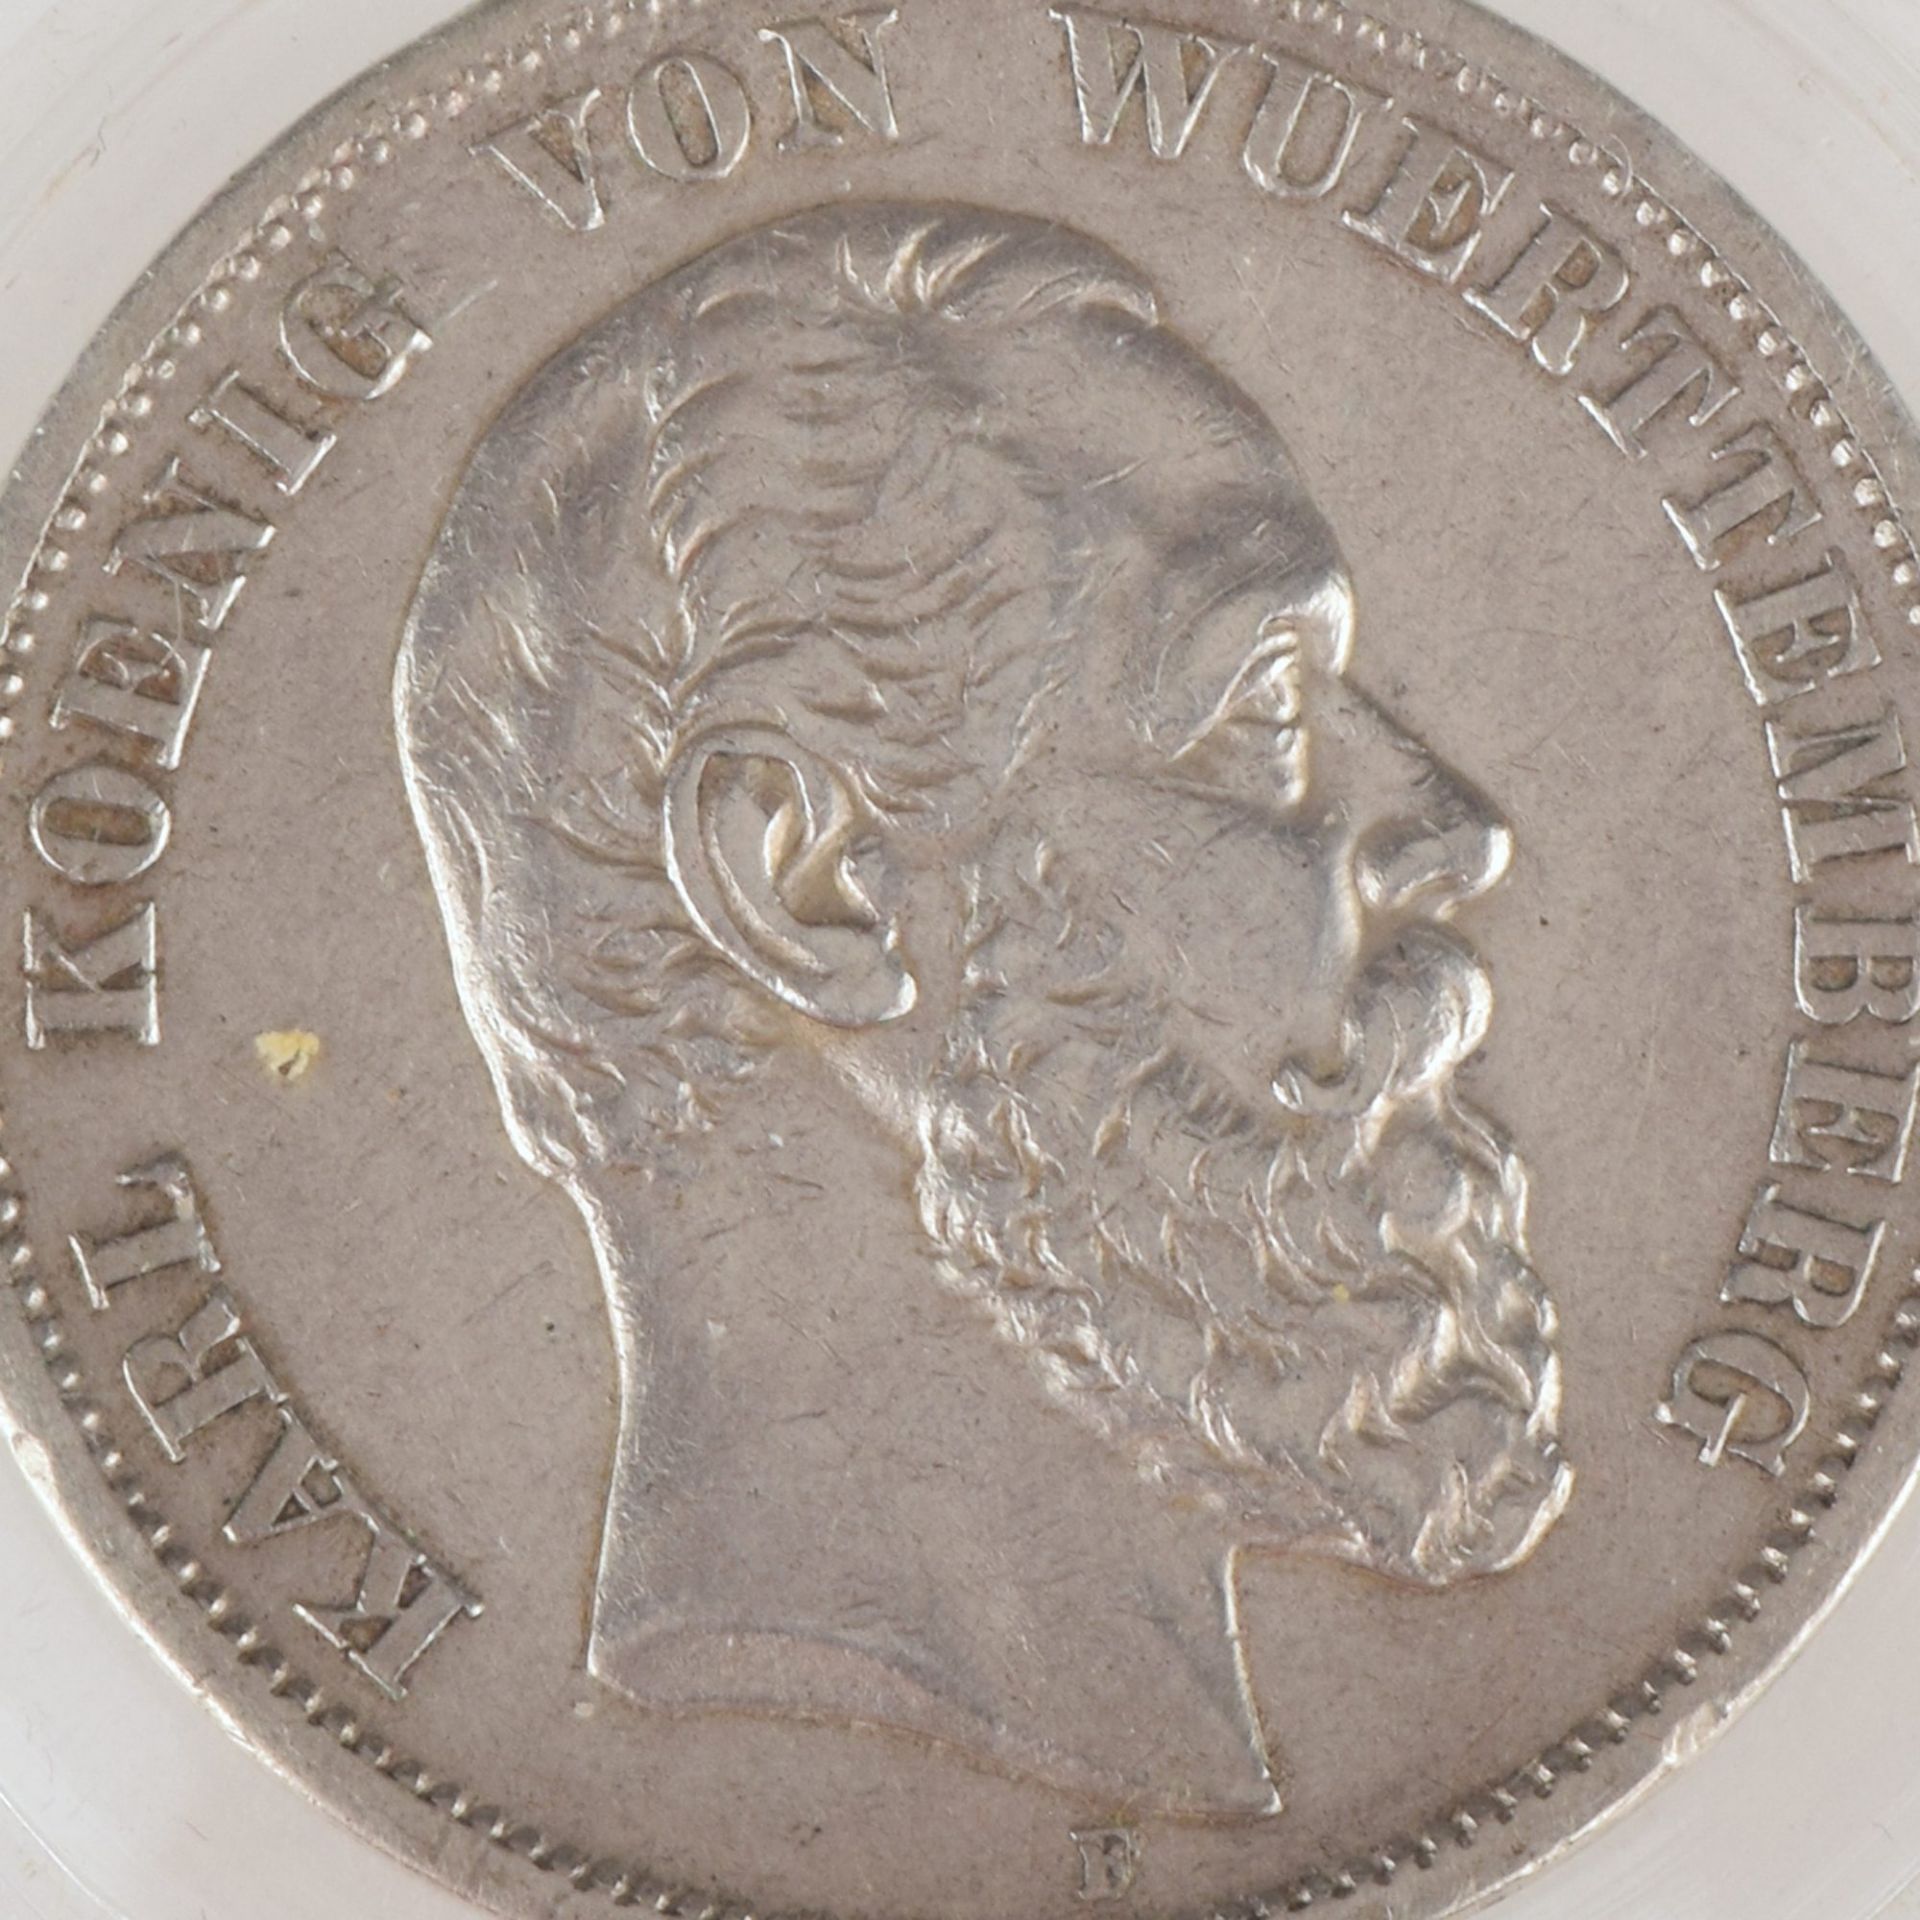 Silbermünze Kaiserreich - Württemberg 1876 5 Mark in Silber, av. Karl König von Württemberg Kopf